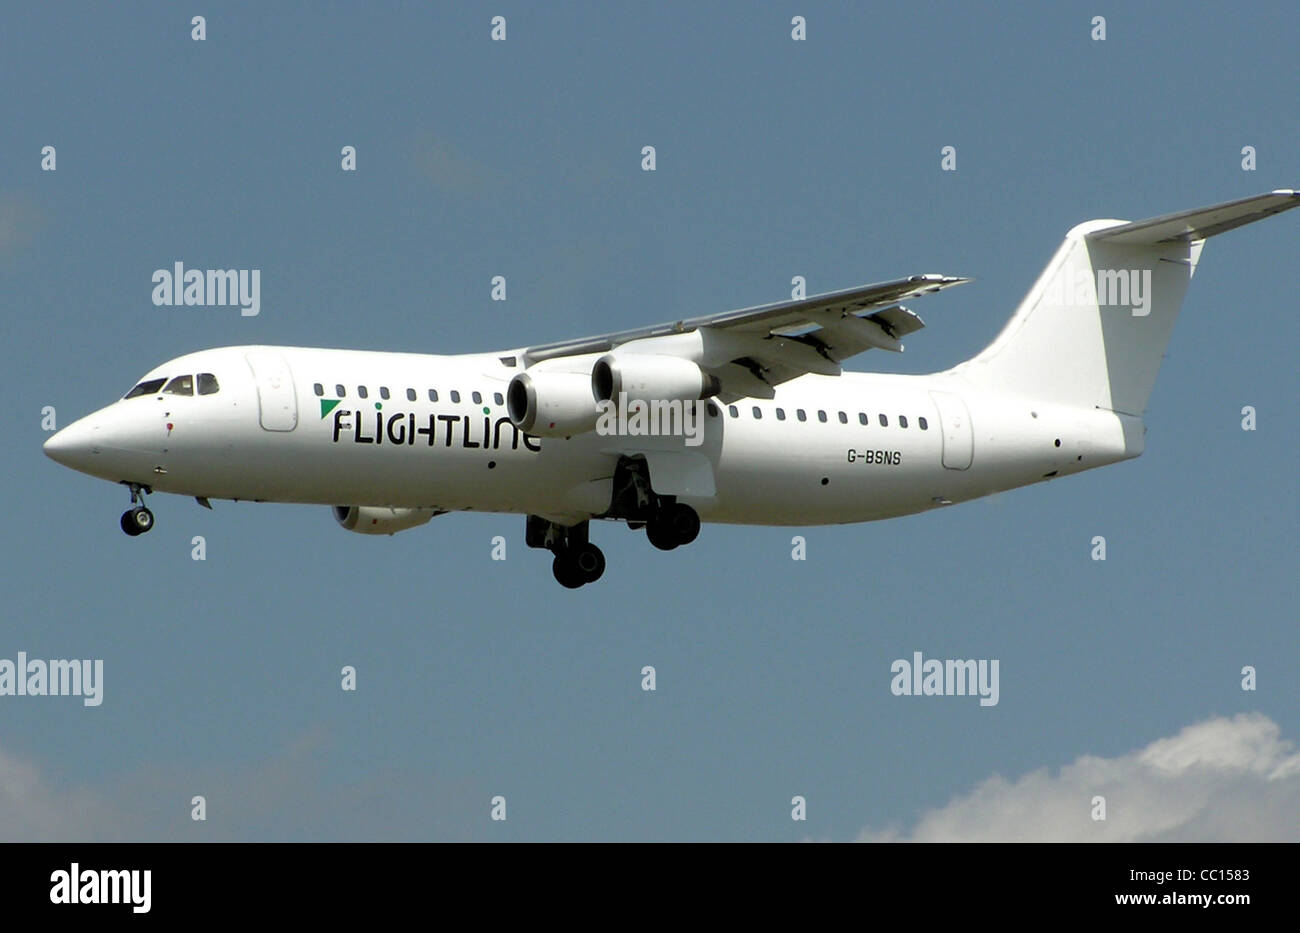 Flightline British Aerospace 146-300 (G-BSNS) landet auf dem Flughafen London Heathrow. Stockfoto